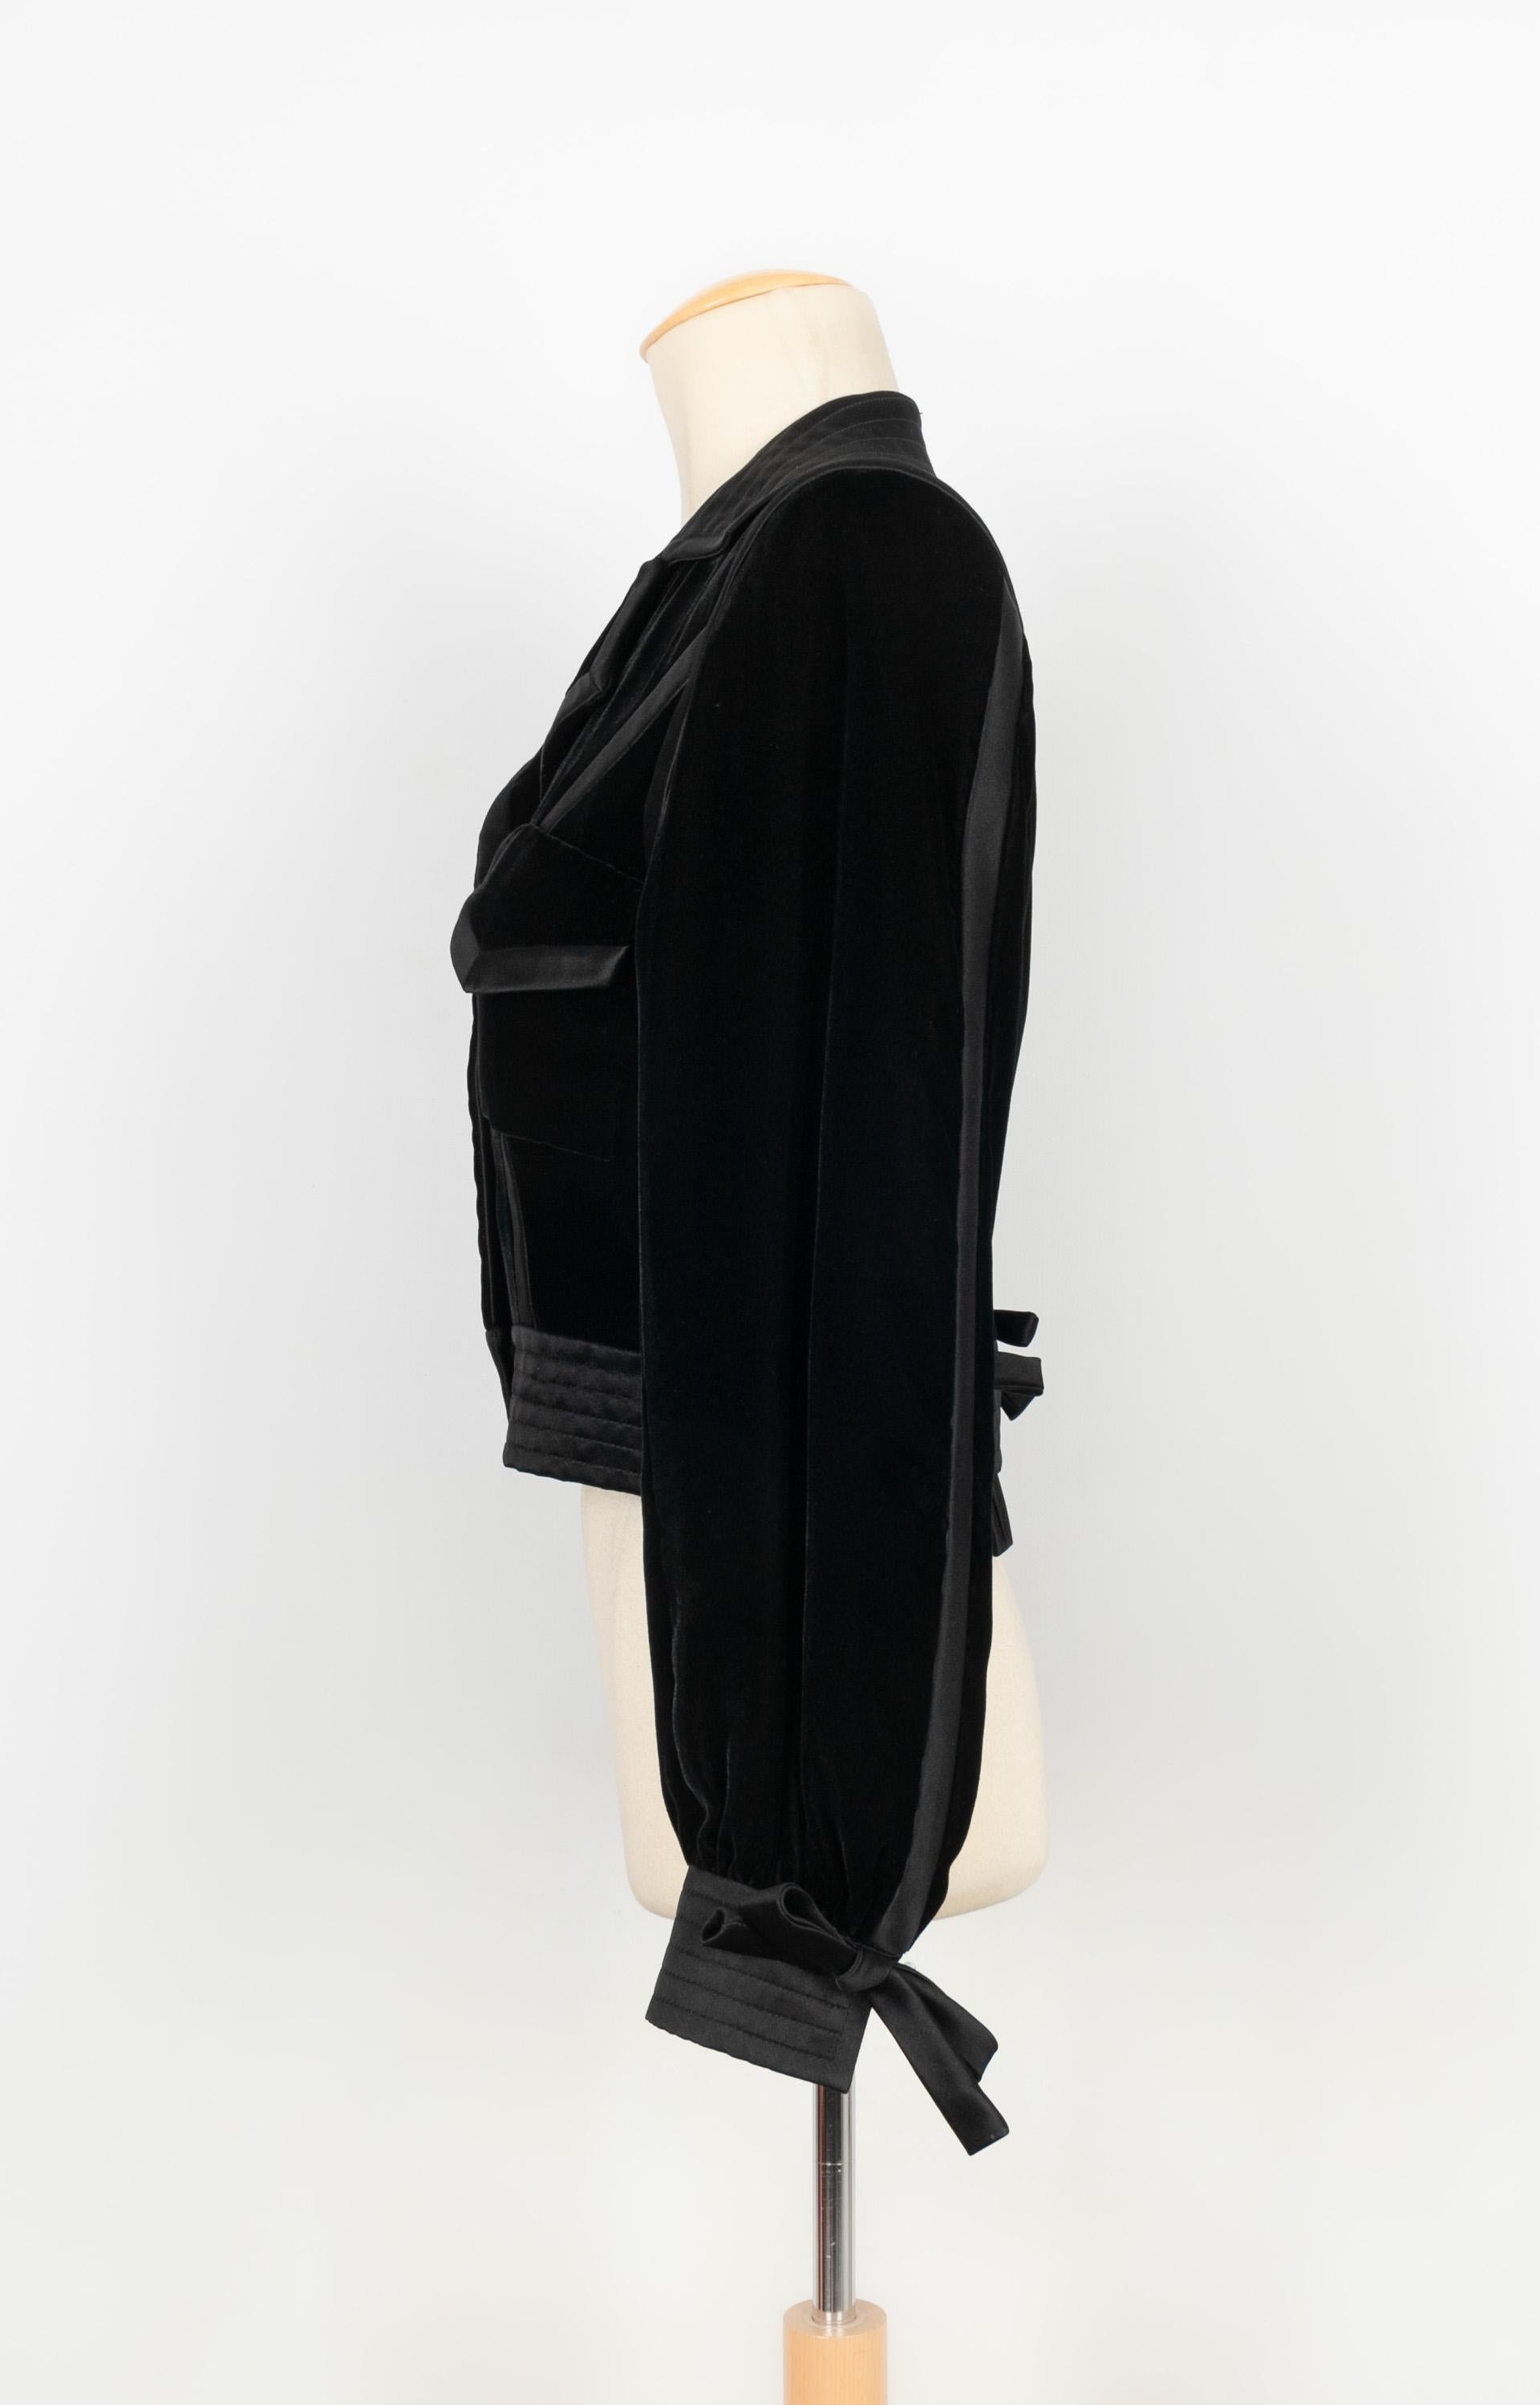 CHRISTIAN LACROIX - Haute Couture Kurzjacke aus Seidensatin und schwarzem Samt. Keine Größenangabe, es passt ein 38FR/40FR.

Bedingung:
Sehr guter Zustand

Abmessungen:
Schulterbreite: 42 cm - Brustumfang: 44 cm - Ärmellänge: 60 cm - Länge: 46